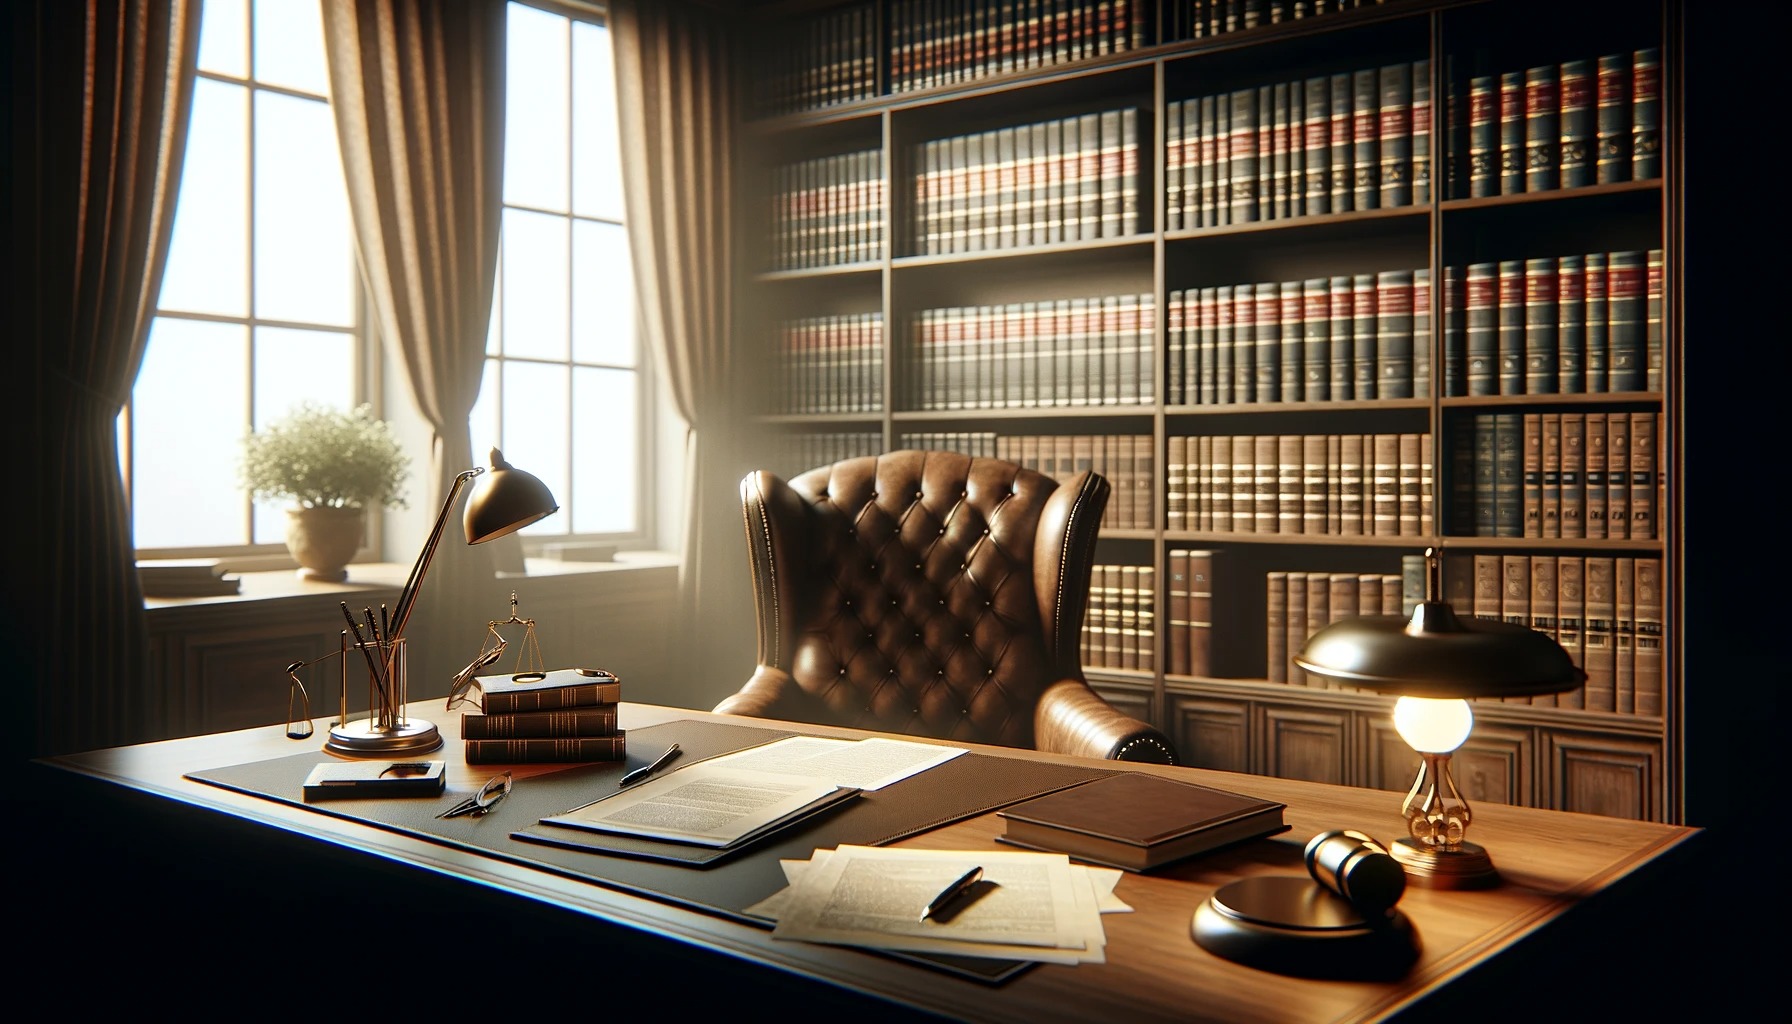 安い顧問料で充実した顧問弁護士サービスを提供する法律事務所の顧問弁護士の執務室